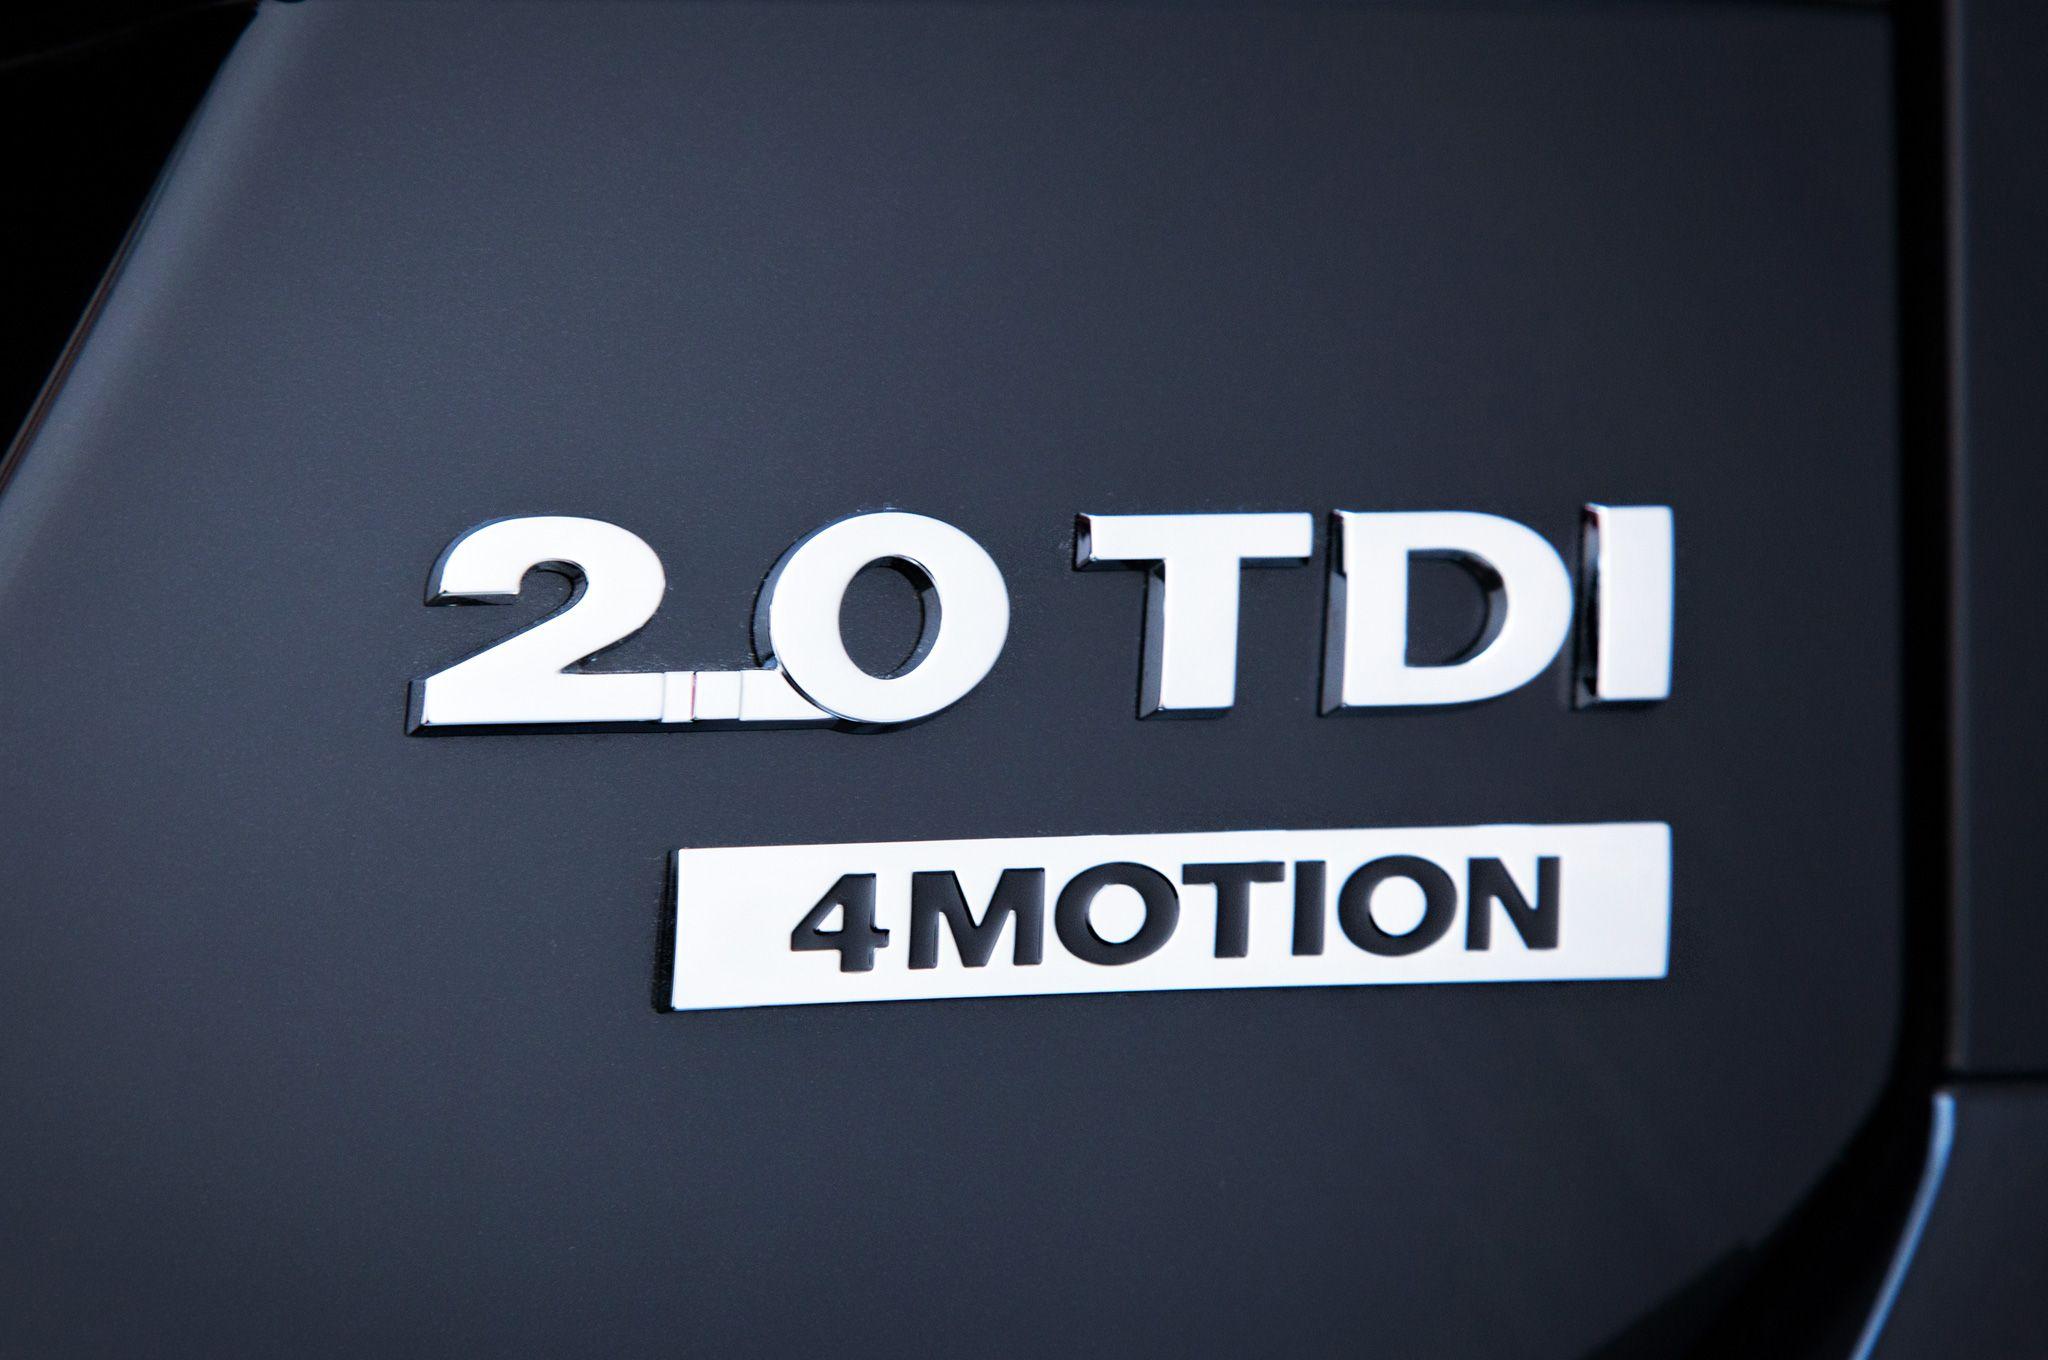 VW TDI Logo - VW Golf Sportwagen TDI 4 Motion With 6MT or DSG!